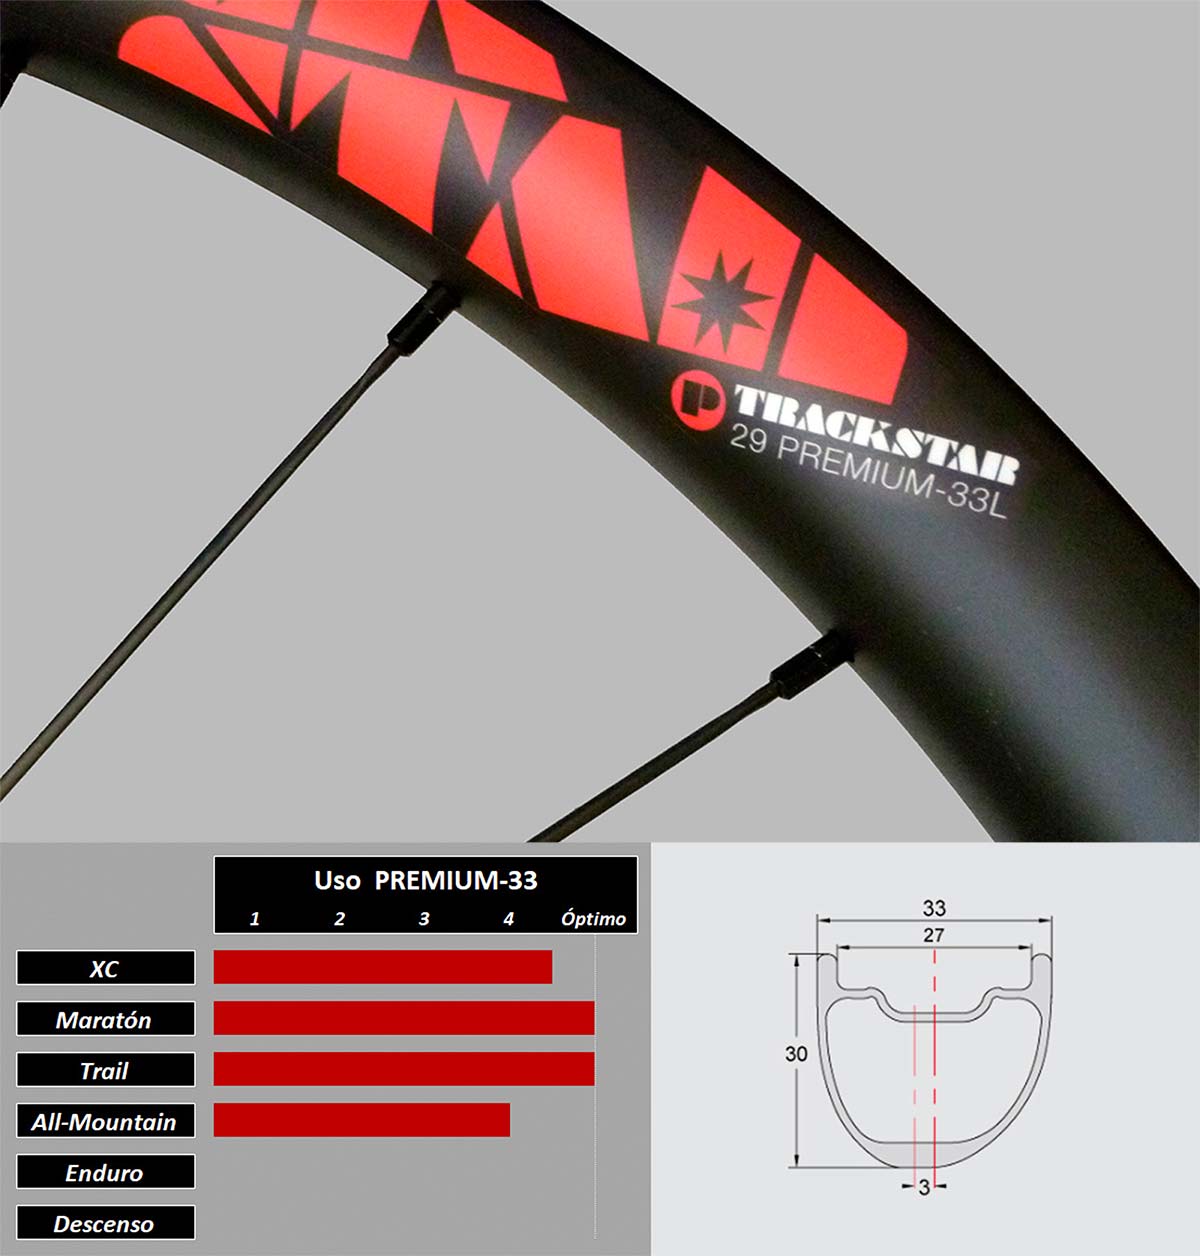 En TodoMountainBike: Trackstar Premium-33L, unas ruedas de carbono ligeras, resistentes y económicas para bicis de XC y Trail